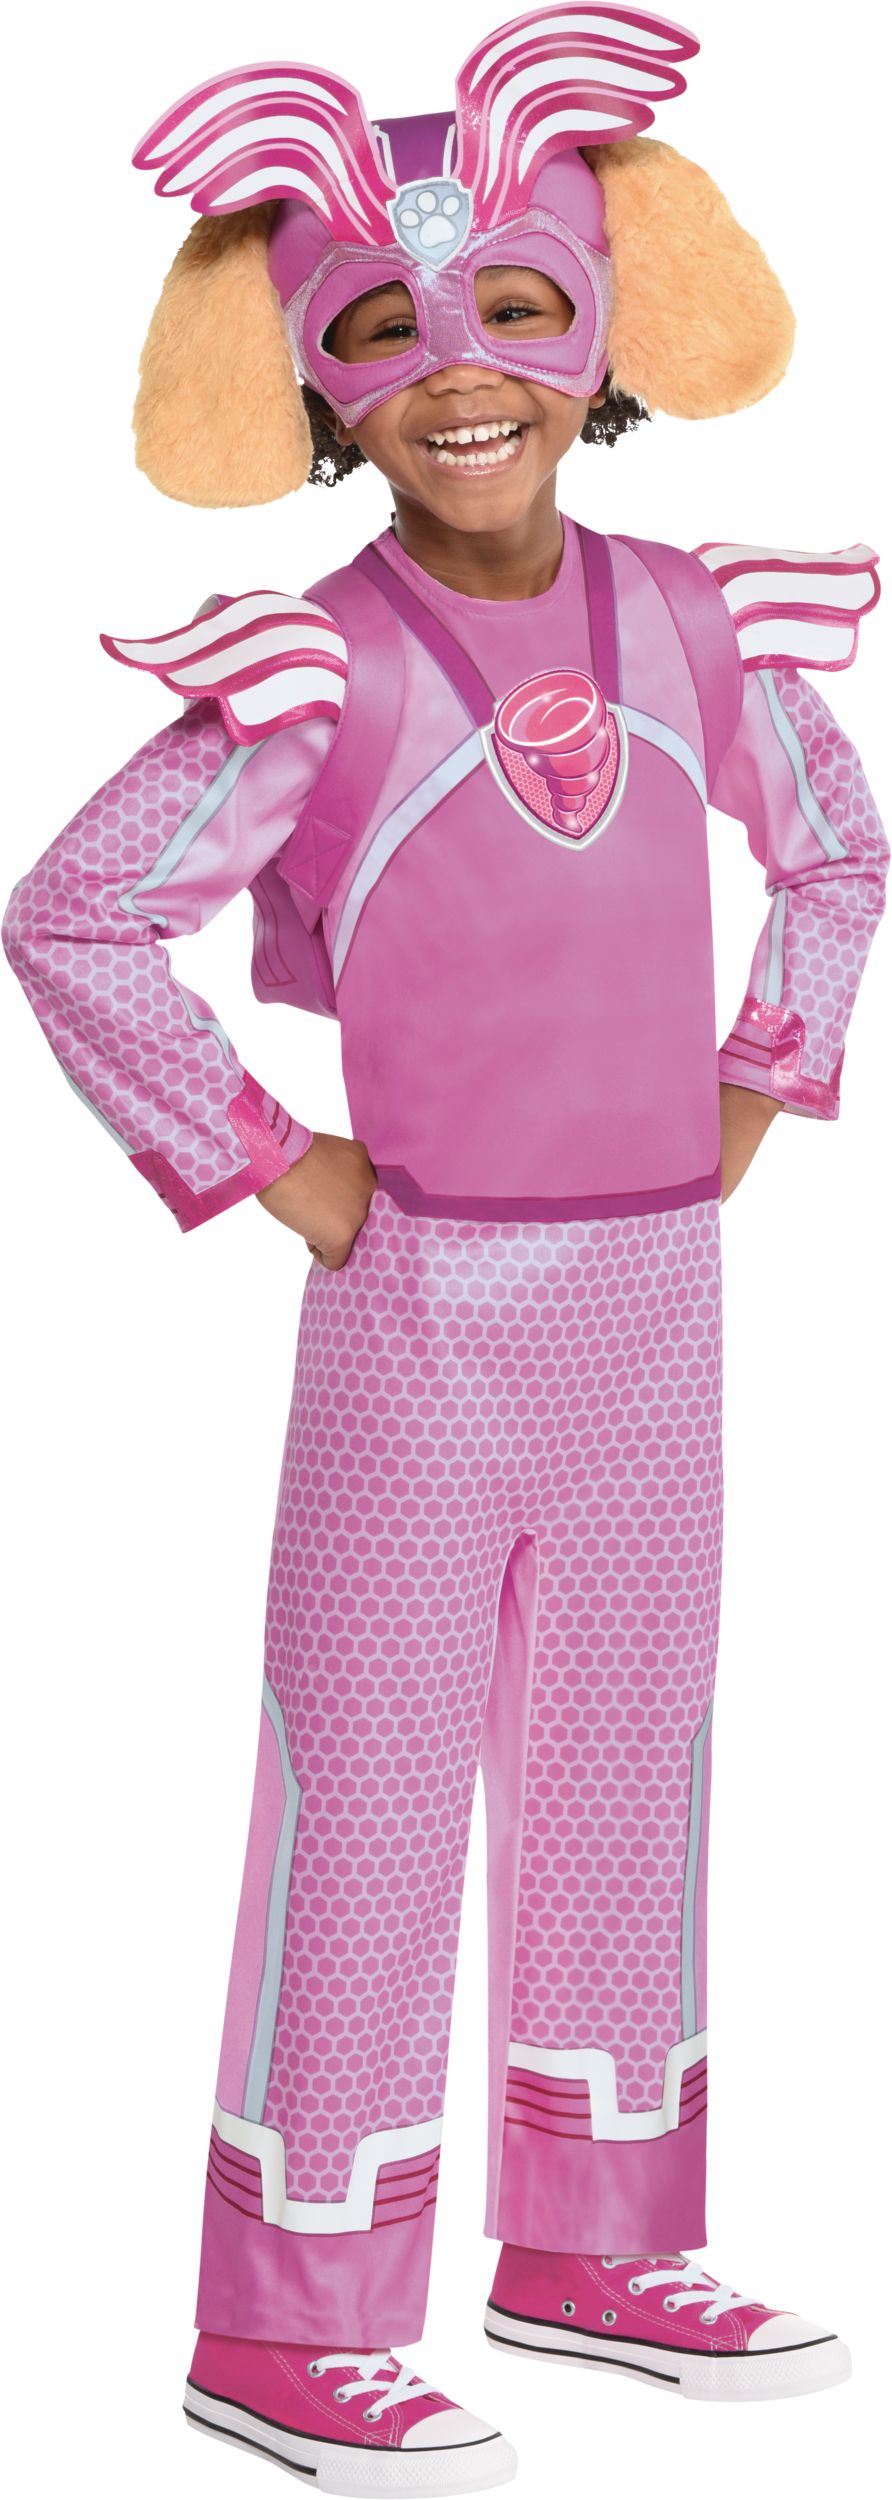 Costume de Stella de la Pat'Patrouille Nickelodeon pour enfants, tenue rose  avec chapeau et sac à dos, choix de tailles